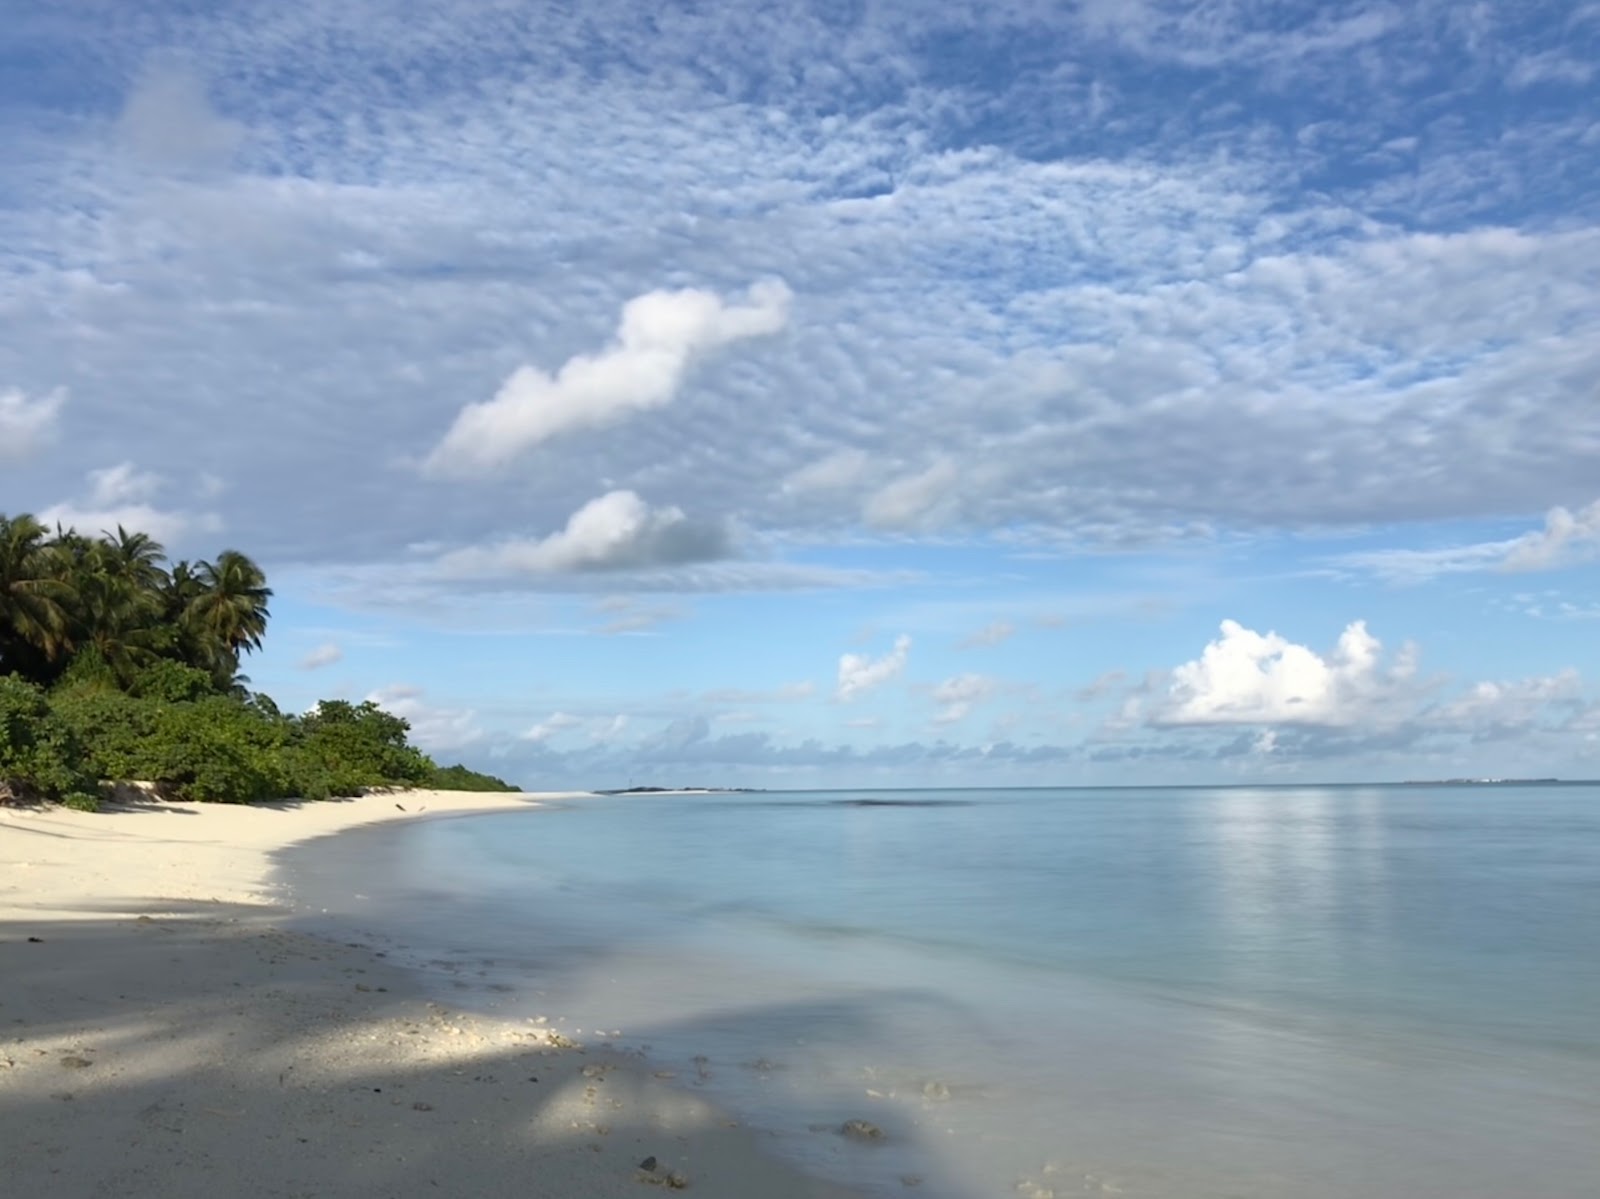 Zdjęcie Fenfushee Island z powierzchnią biały piasek